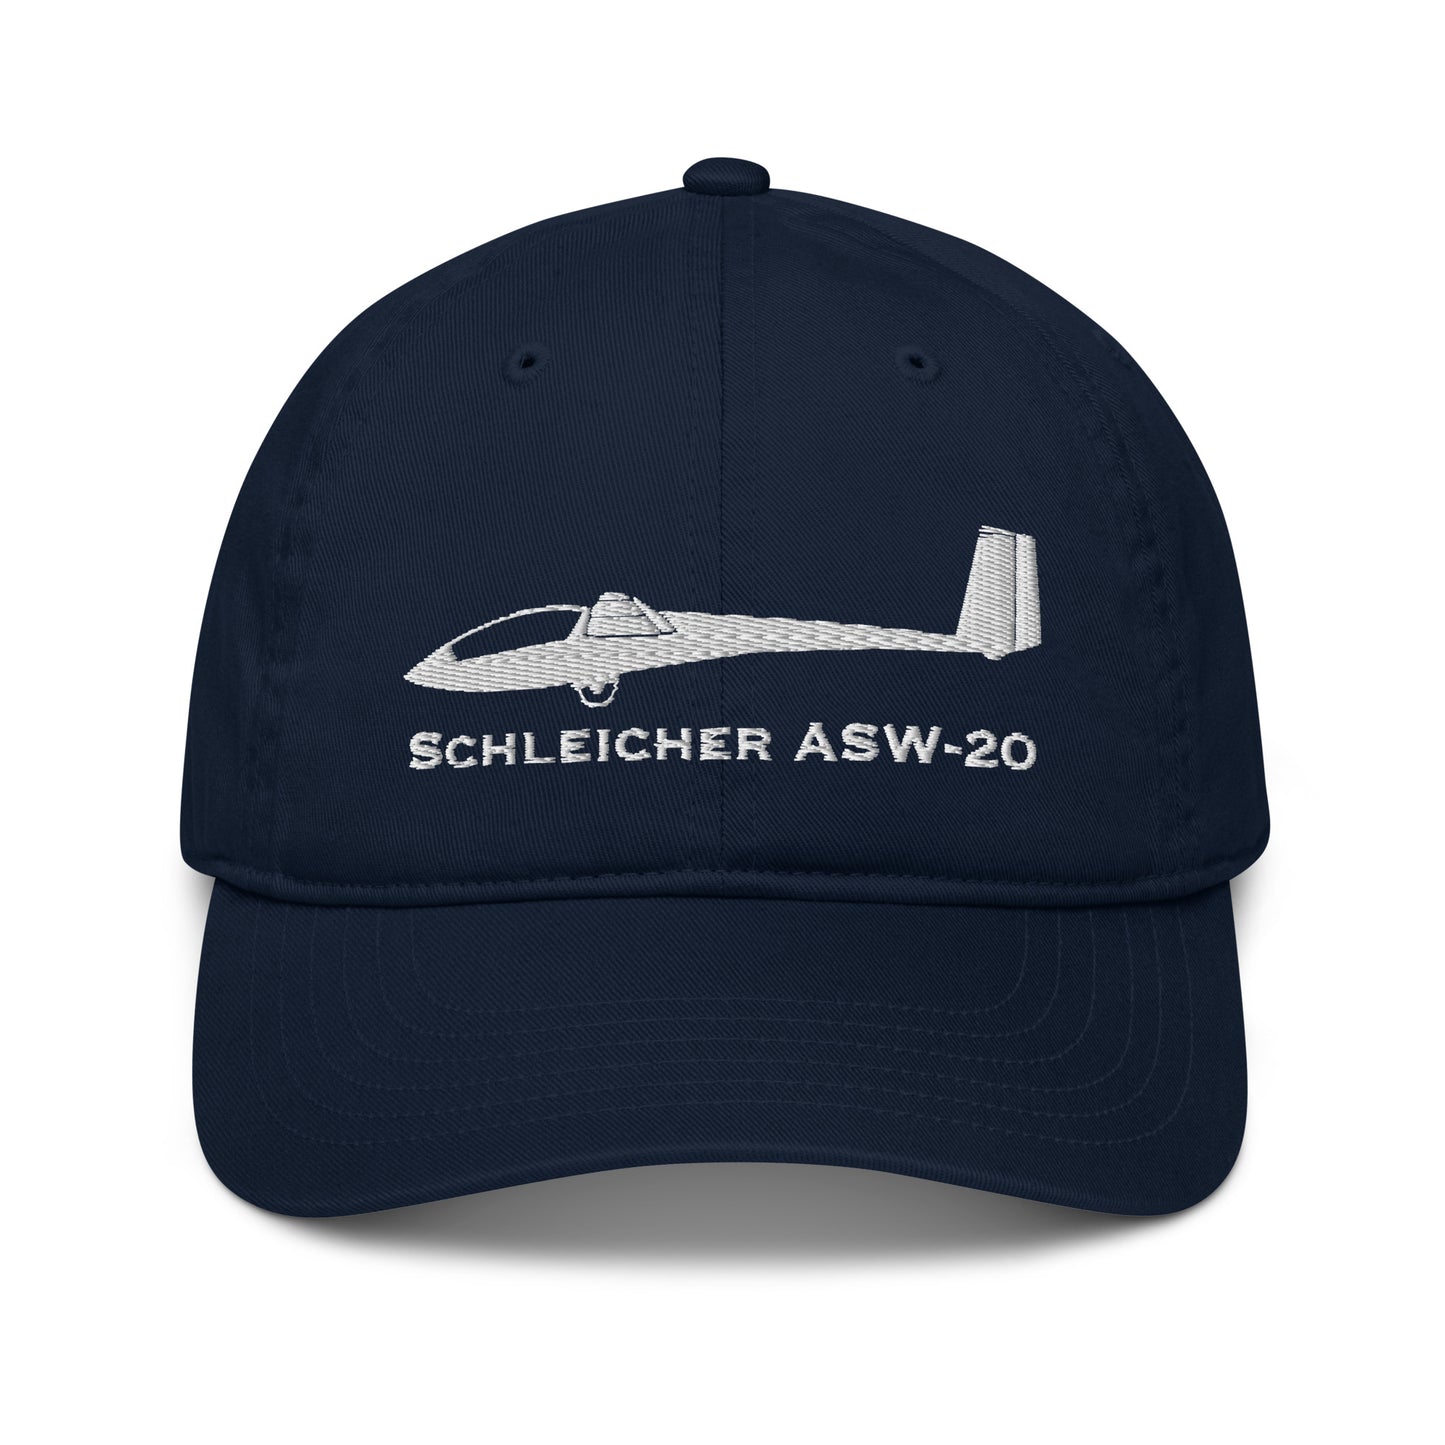 Schleicher ASW-20 Embroidered Airplane Hat